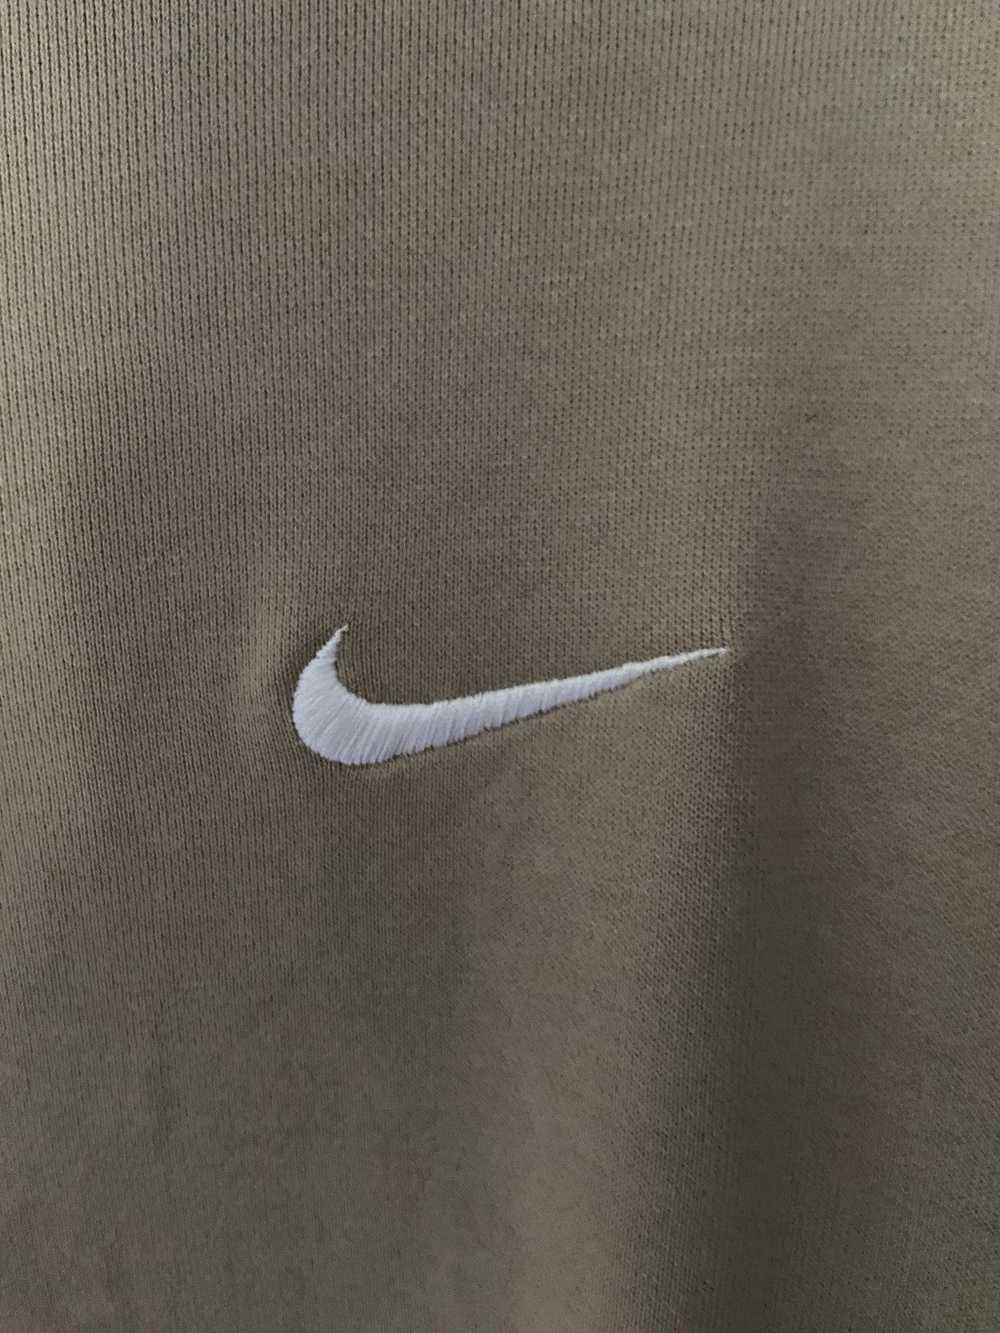 Nike Nike Sweatshirt Size Large - image 2